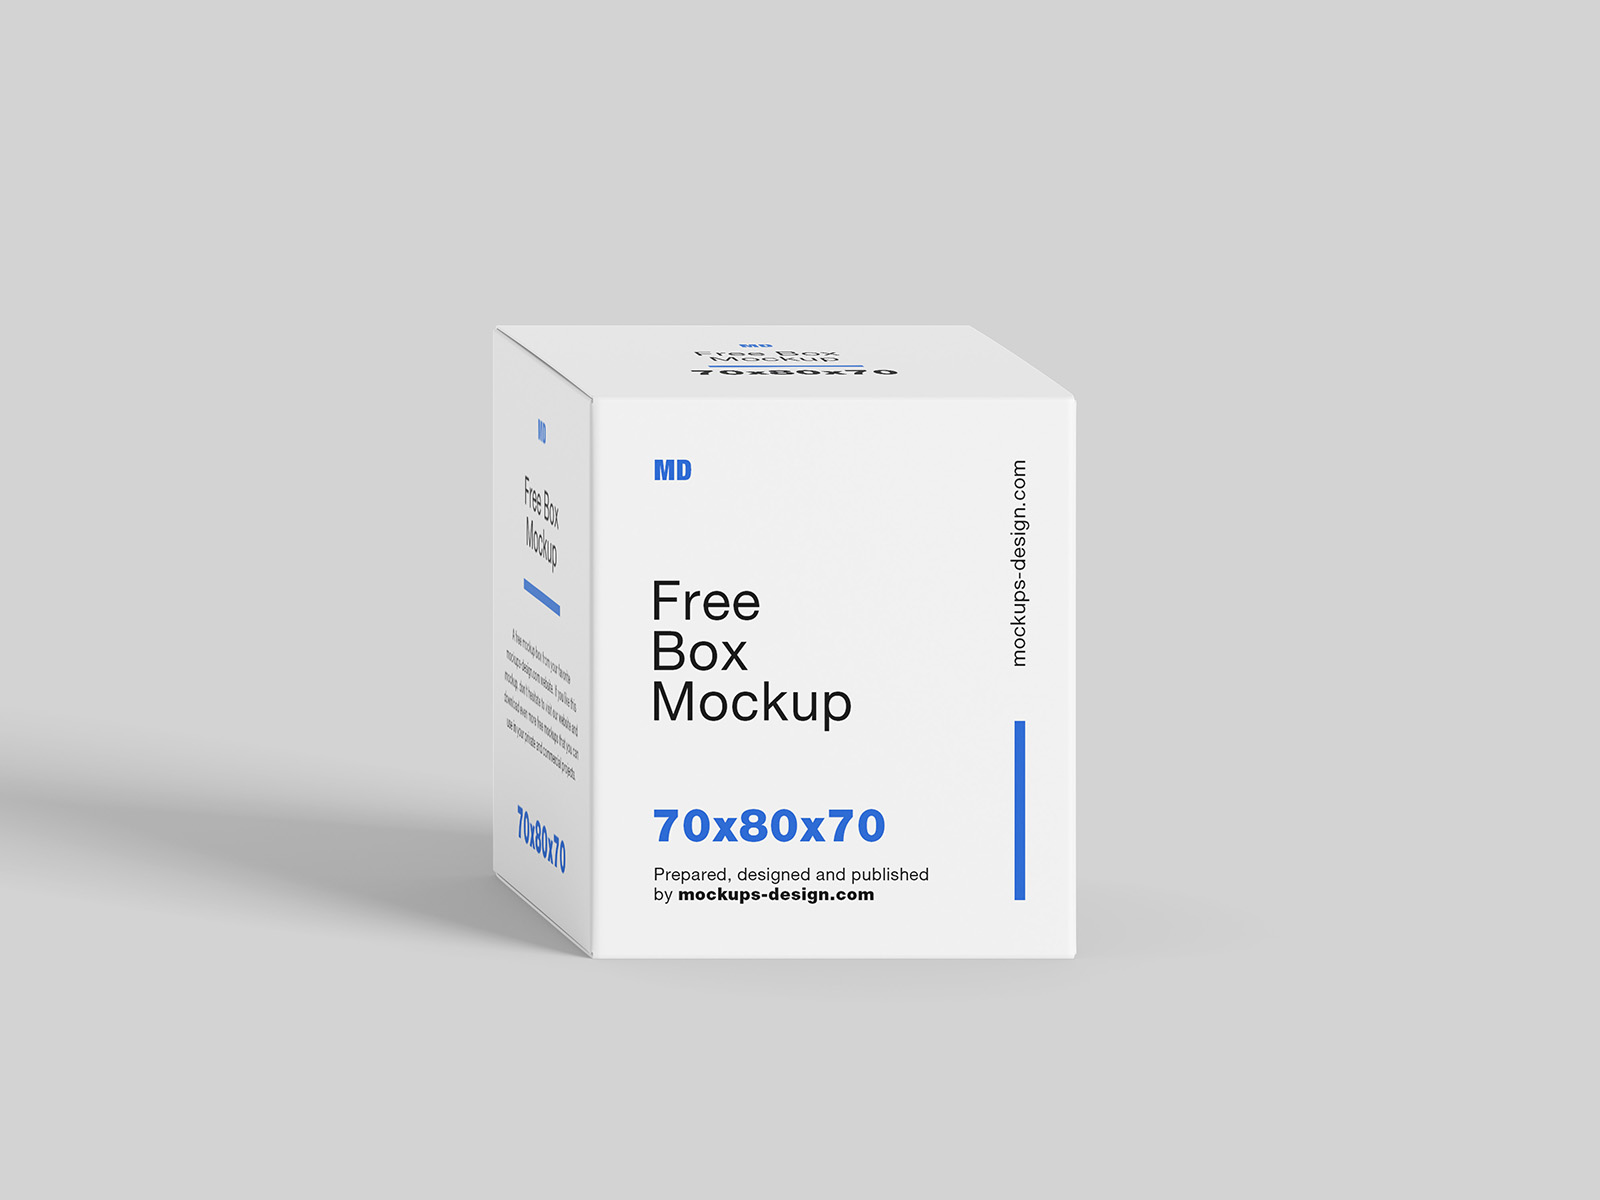 Free box mockup / 70x80x70 mm